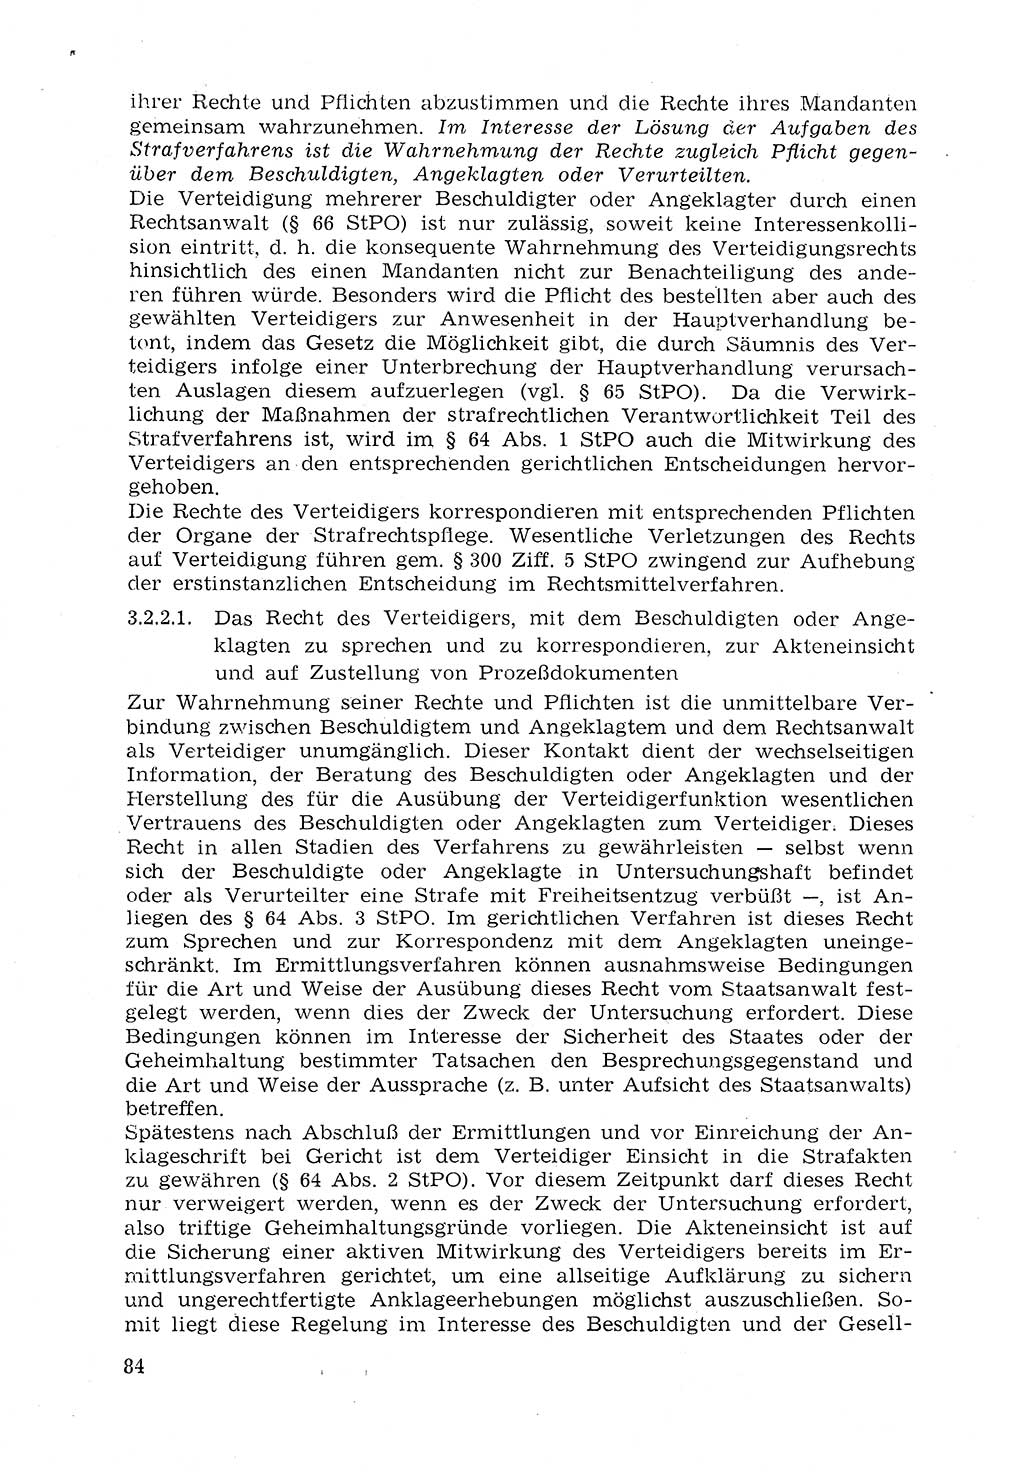 Strafprozeßrecht der DDR (Deutsche Demokratische Republik), Lehrmaterial 1969, Seite 84 (Strafprozeßr. DDR Lehrmat. 1969, S. 84)